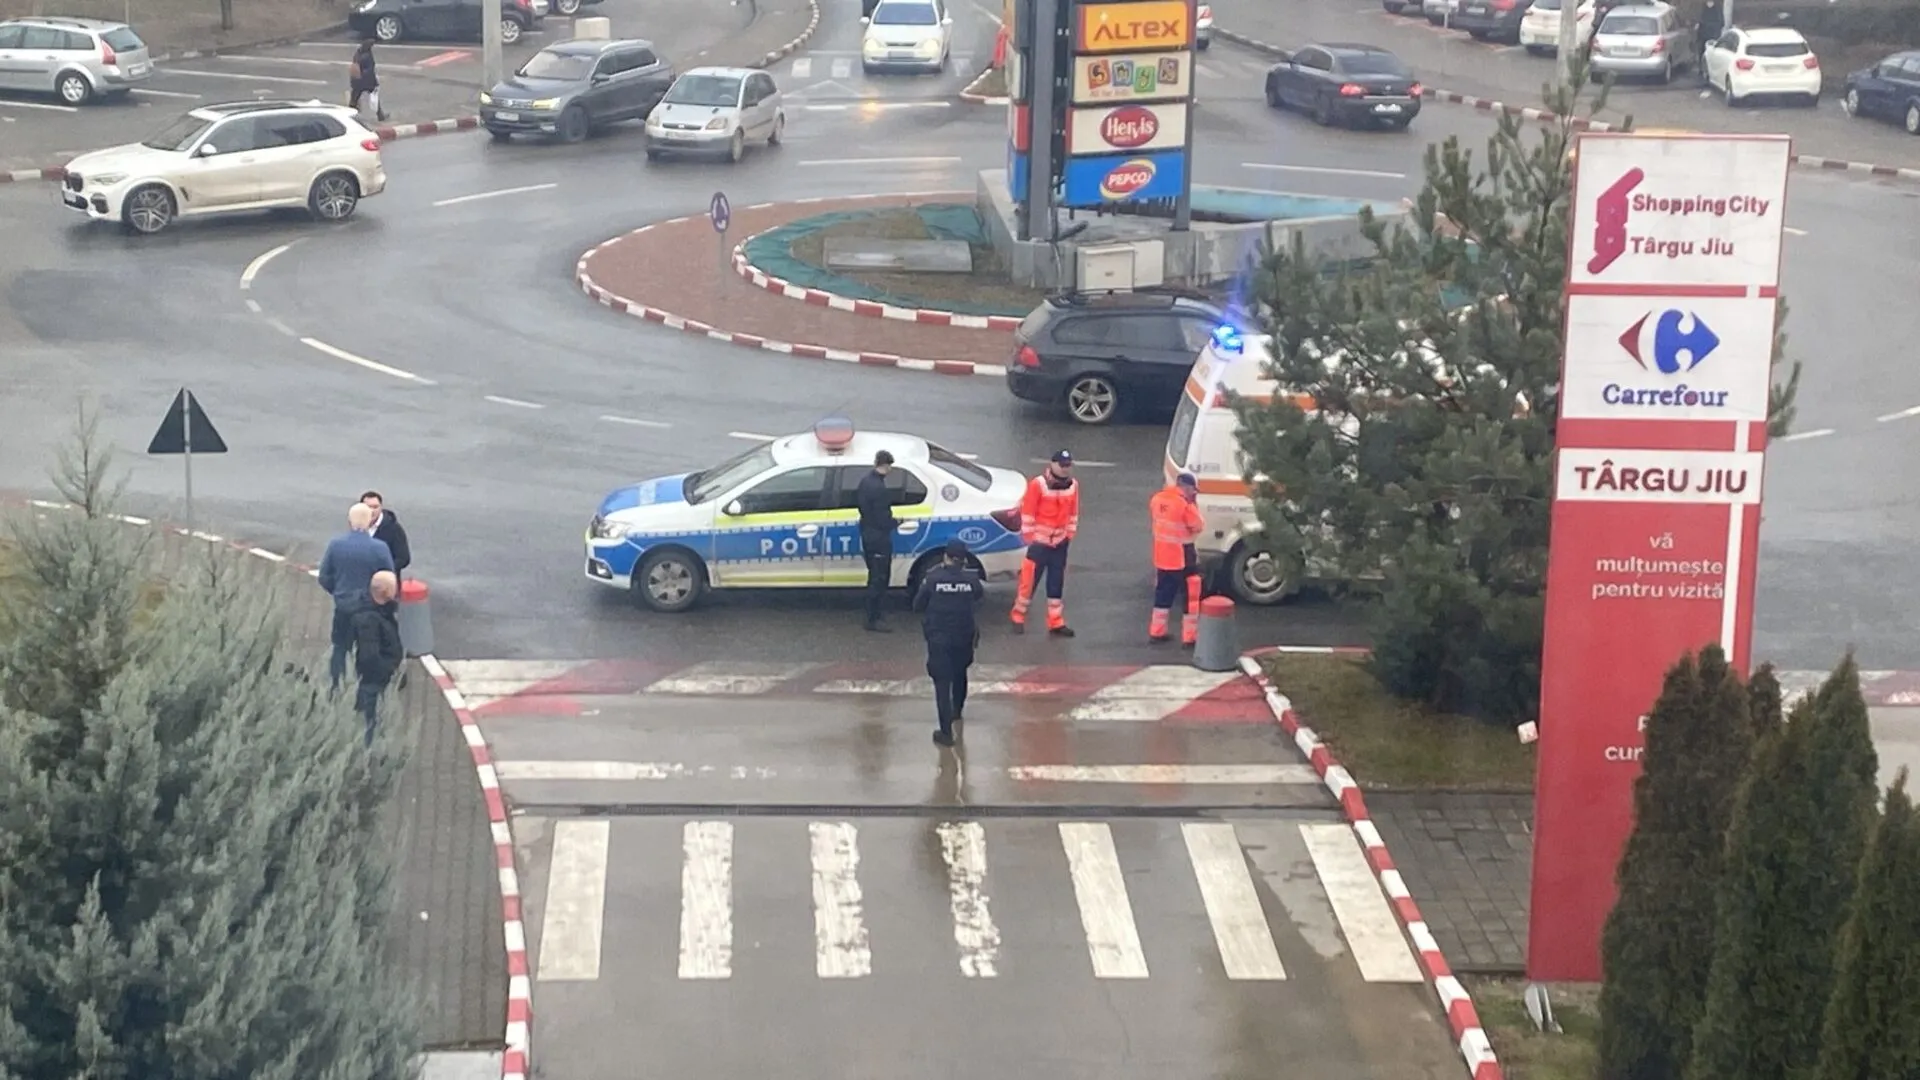 Ultima oră: Alertă cu bomba la mall-ul din Târgu-Jiu. Oamenii, evacuați